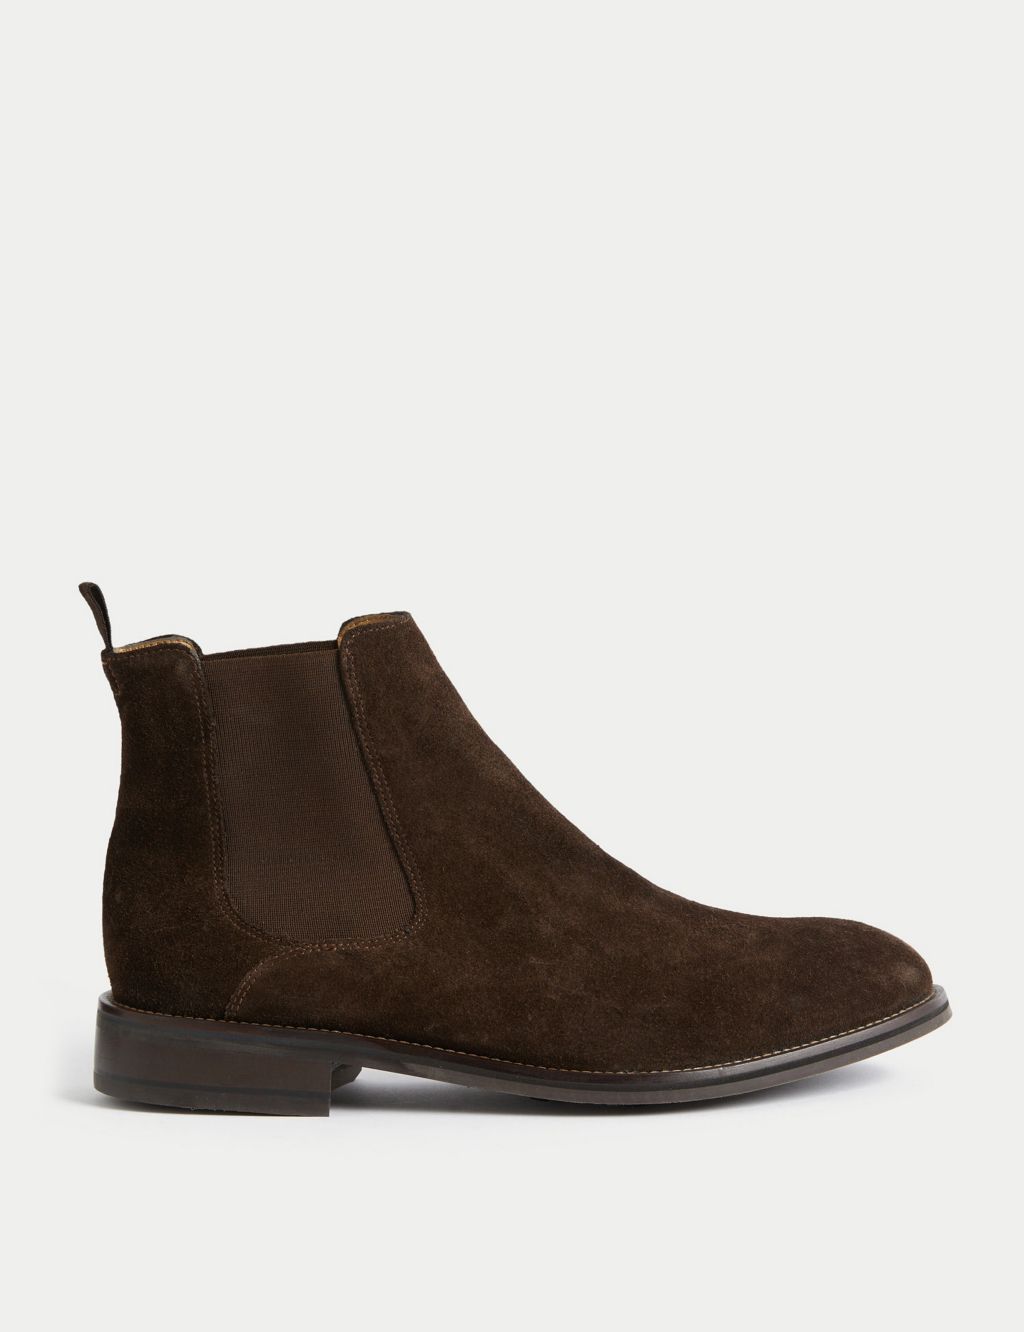 Men’s Brown Boots | M&S